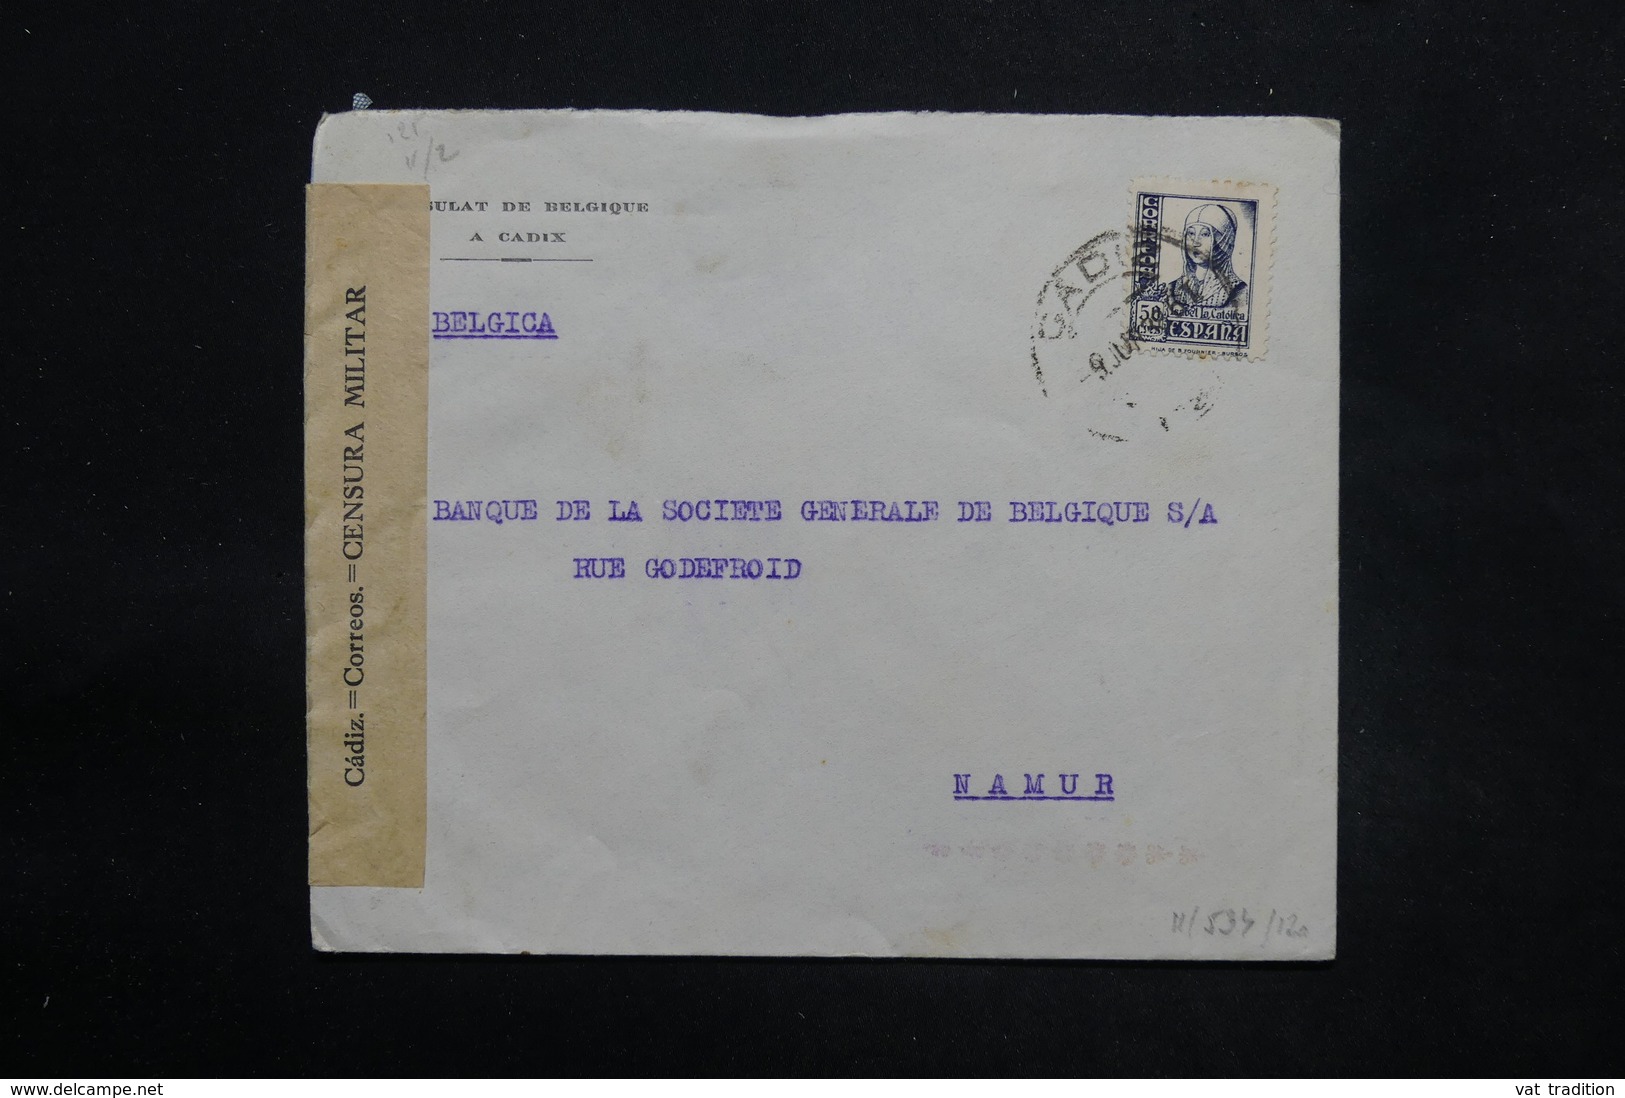 ESPAGNE - Enveloppe De Cadix Pour La Belgique En 1938 Avec Contrôle Postal Militaire - L 25302 - Marques De Censures Républicaines